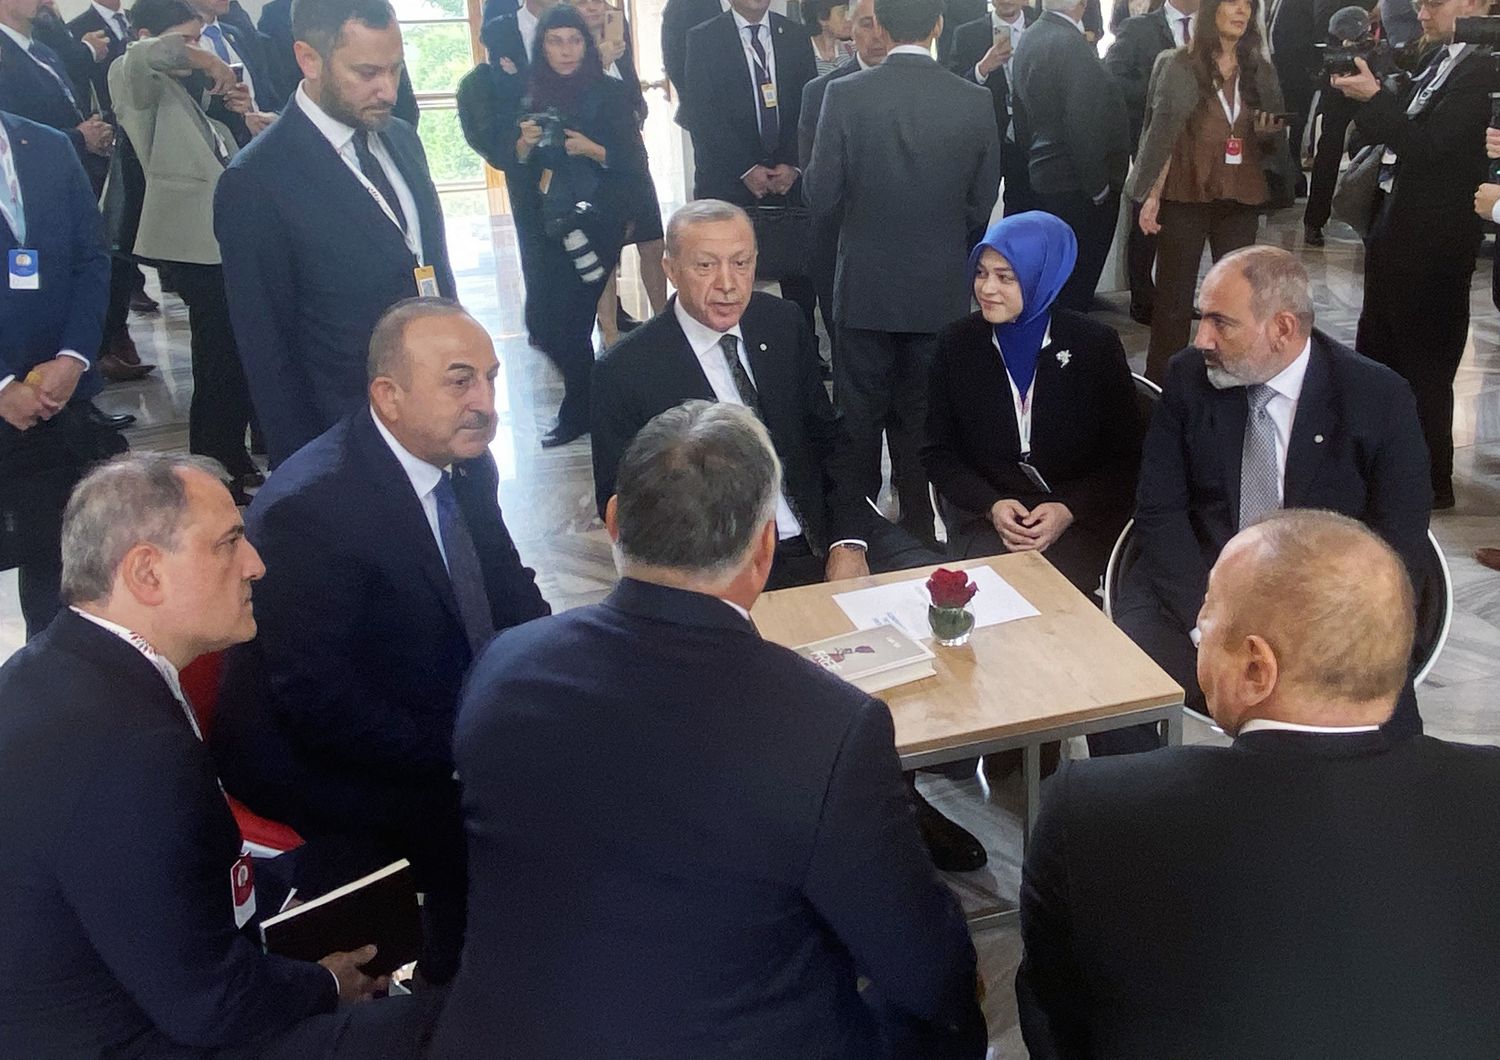 Erdogan a Praga insieme ad altri leader